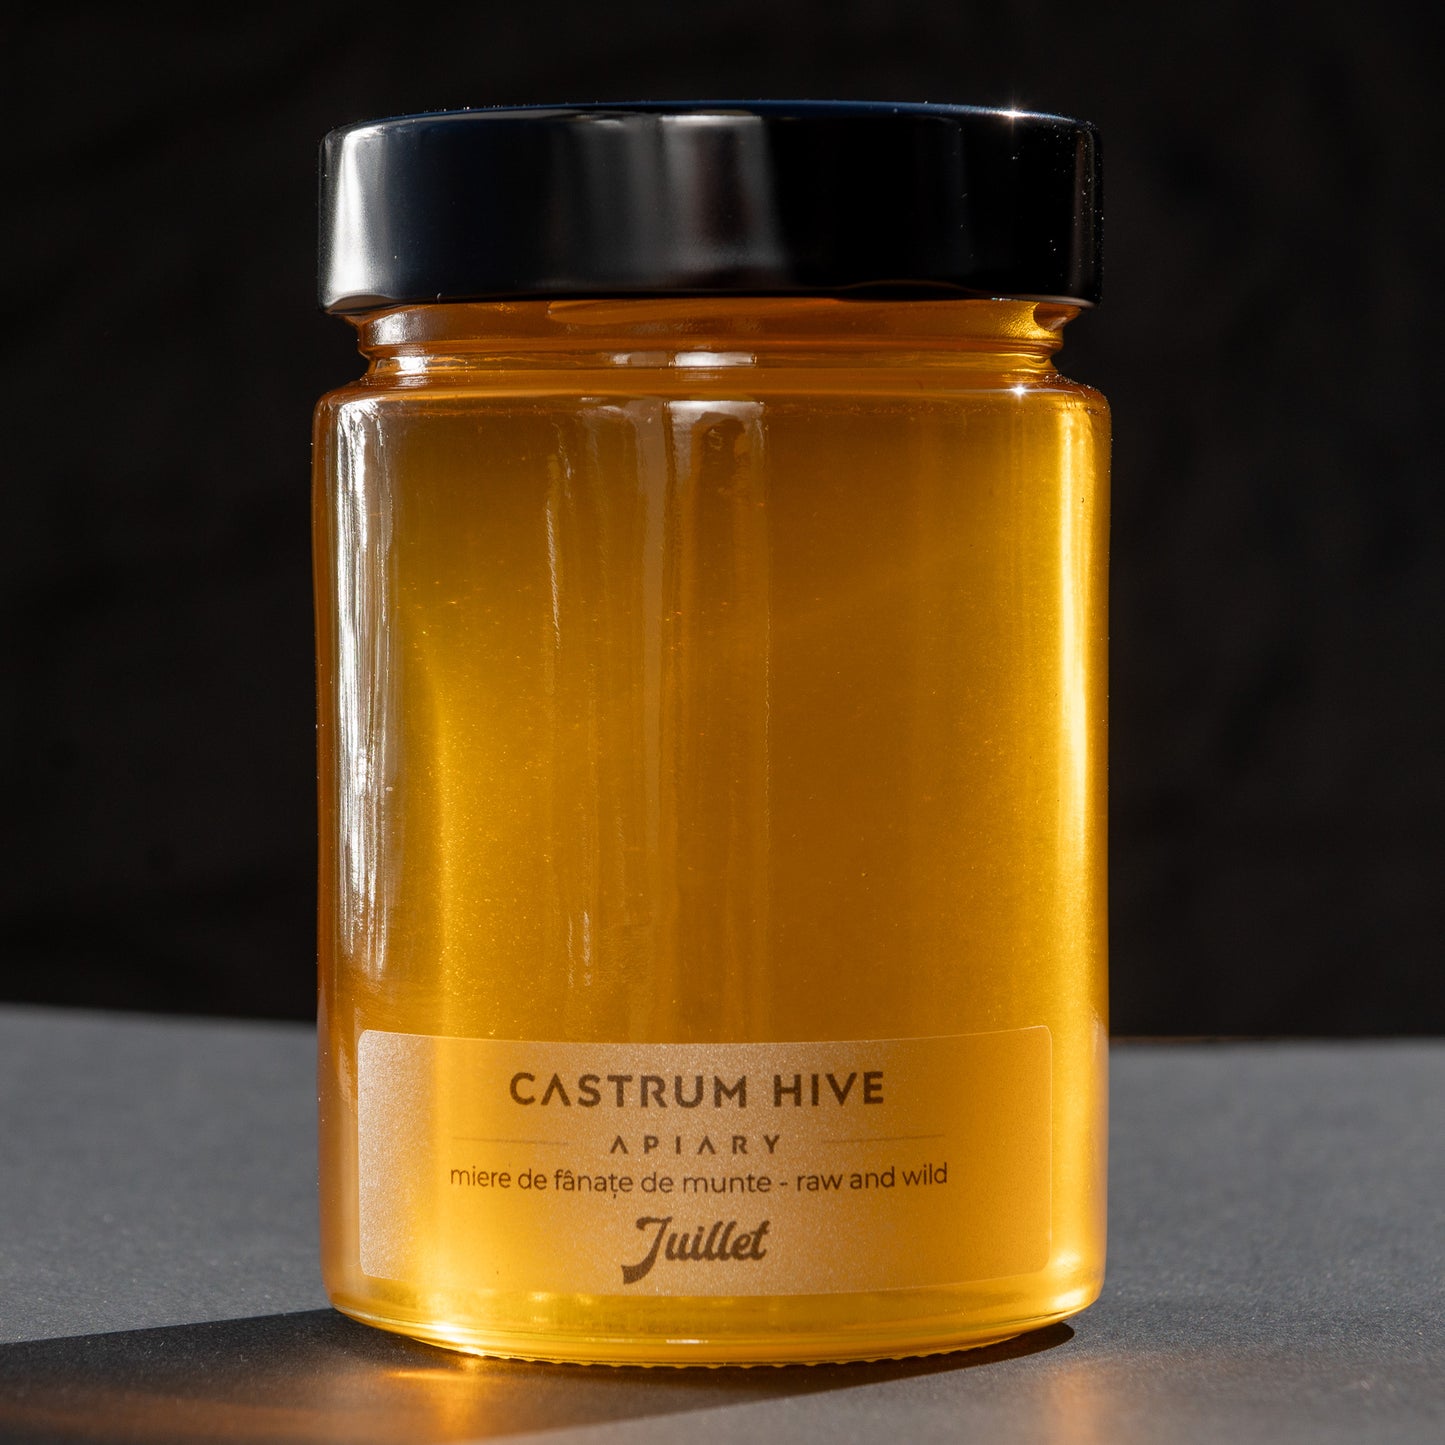 Miere de fâneață Juillet (July wildflowers' honey) - 450 gr